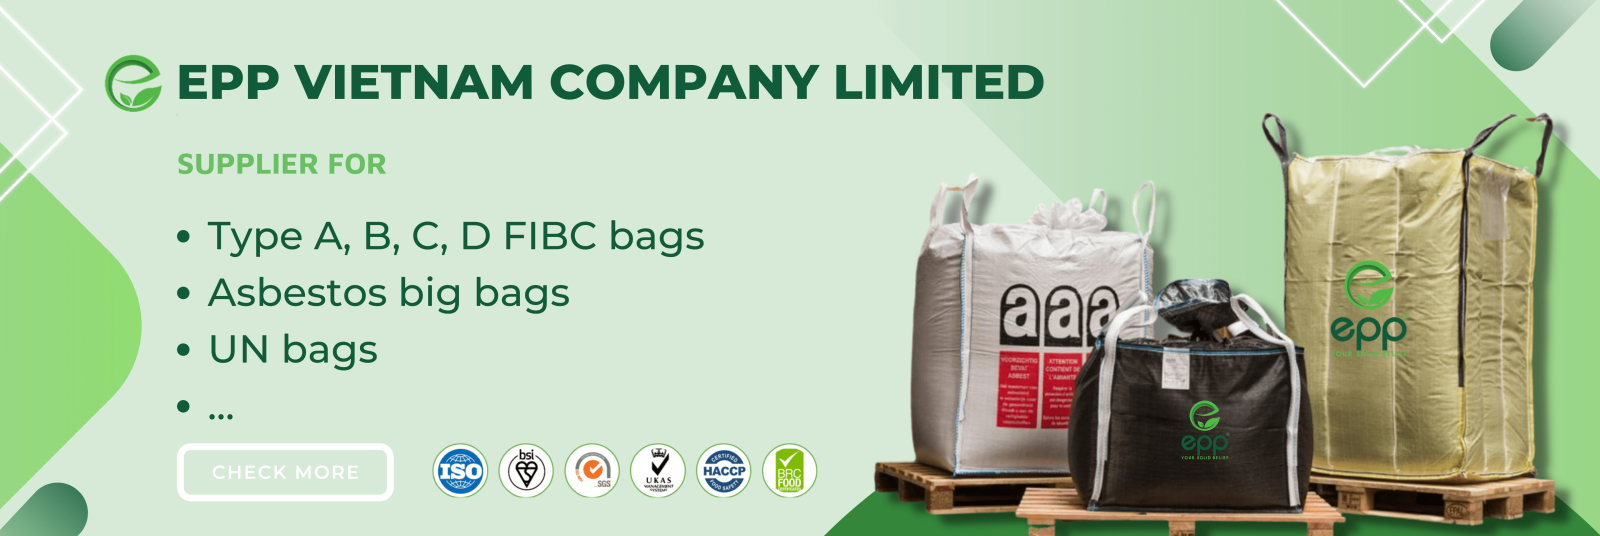 epp-viet-nam-company-limited-fibc-bags-big-bags%20(3)-min.png